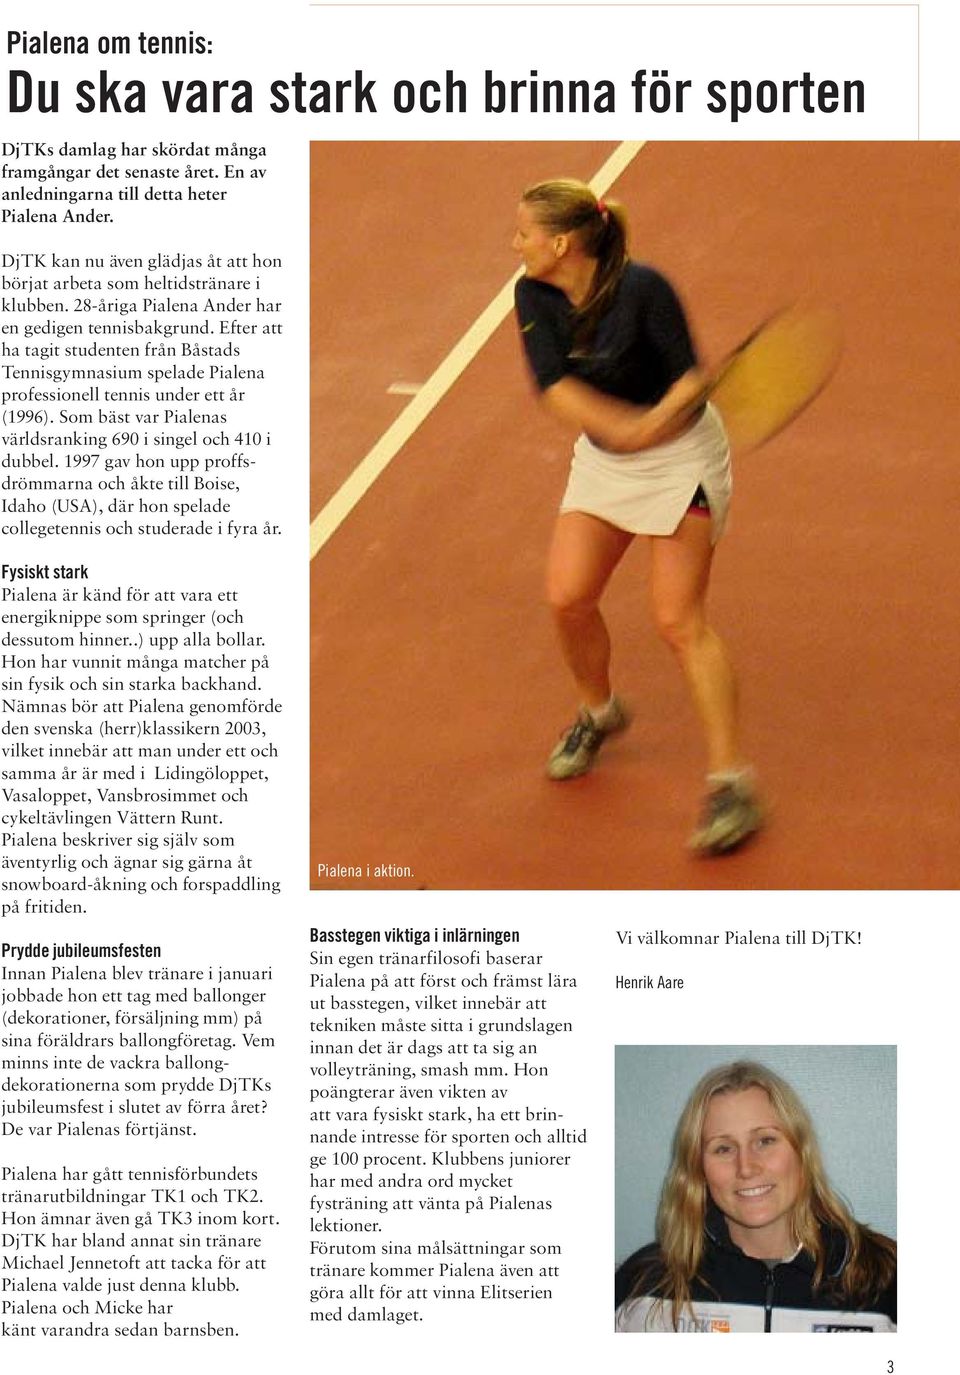 Efter att ha tagit studenten från Båstads Tennisgymnasium spelade Pialena professionell tennis under ett år (1996). Som bäst var Pialenas världsranking 690 i singel och 410 i dubbel.